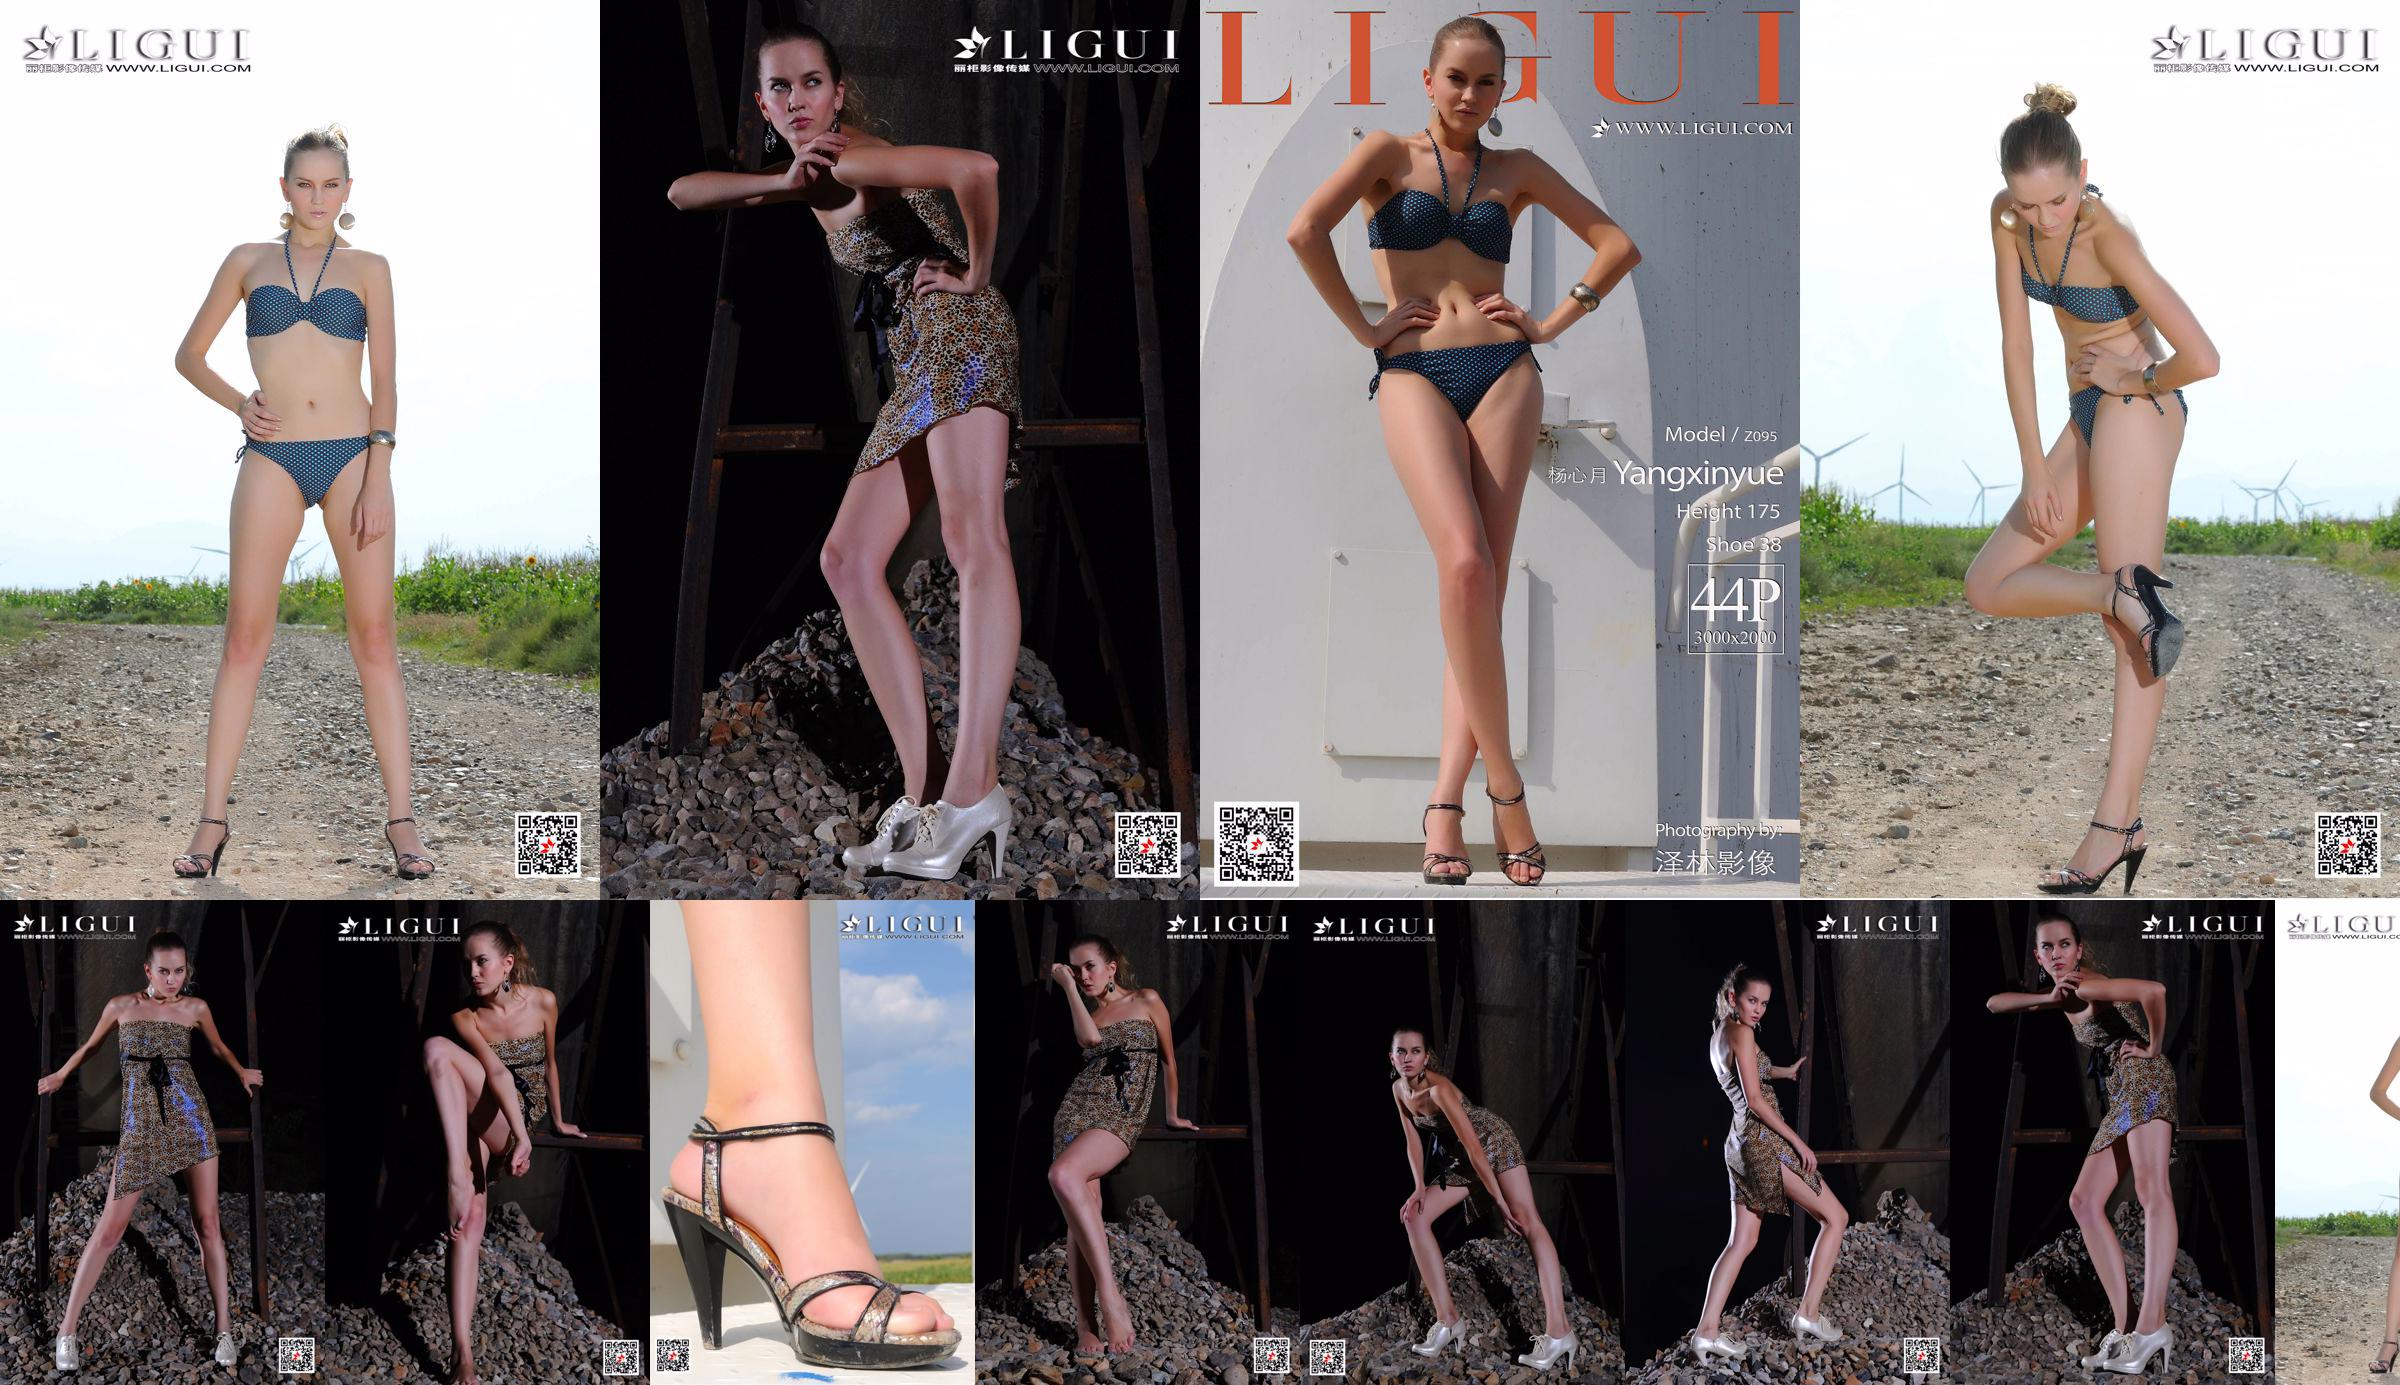 [丽 柜 Ligui] Model Yang Xinyue "Bikini" No.7be008 Seite 1